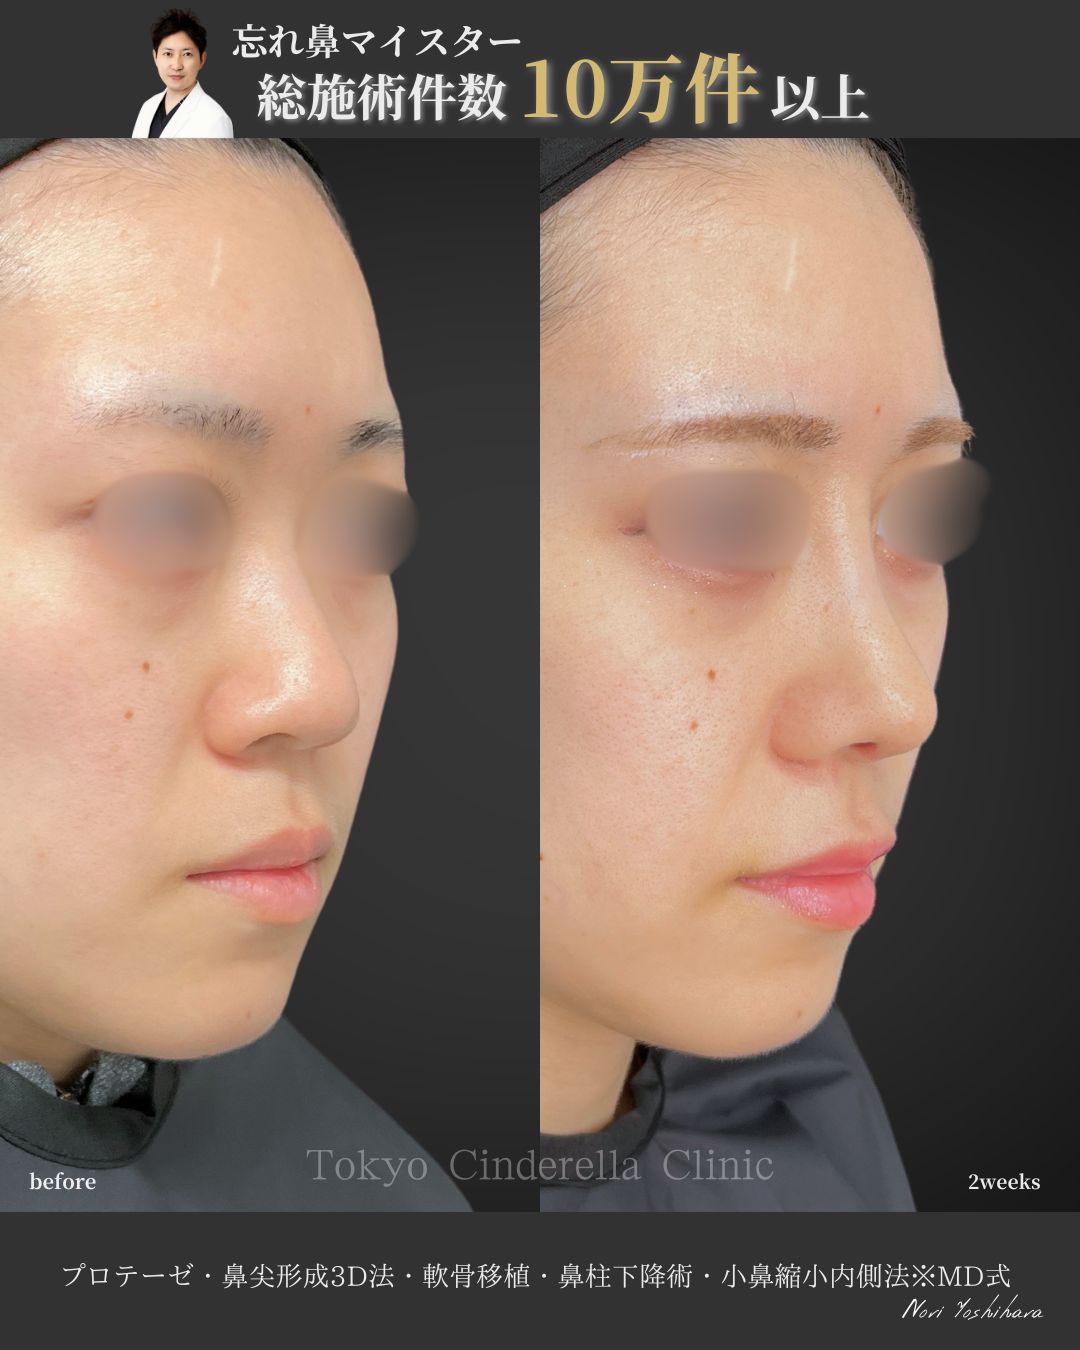 プロテーゼと鼻尖形成3D法と軟骨移植と鼻柱下降術と小鼻縮小内側法をMD式で受けた女性の症例写真